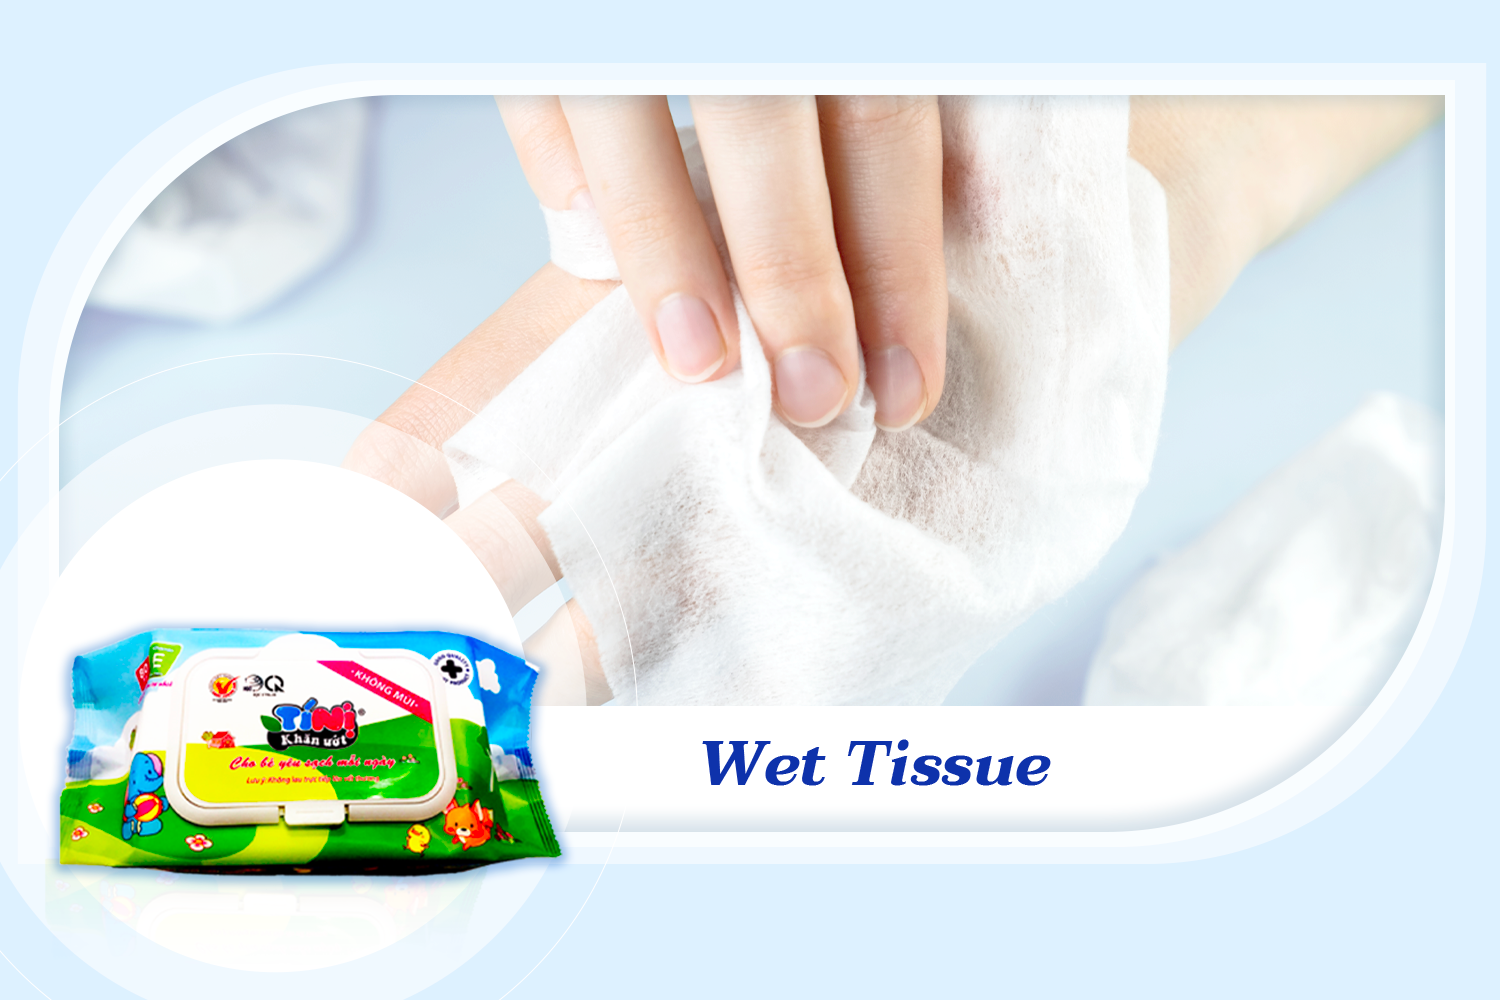 Wet tissue